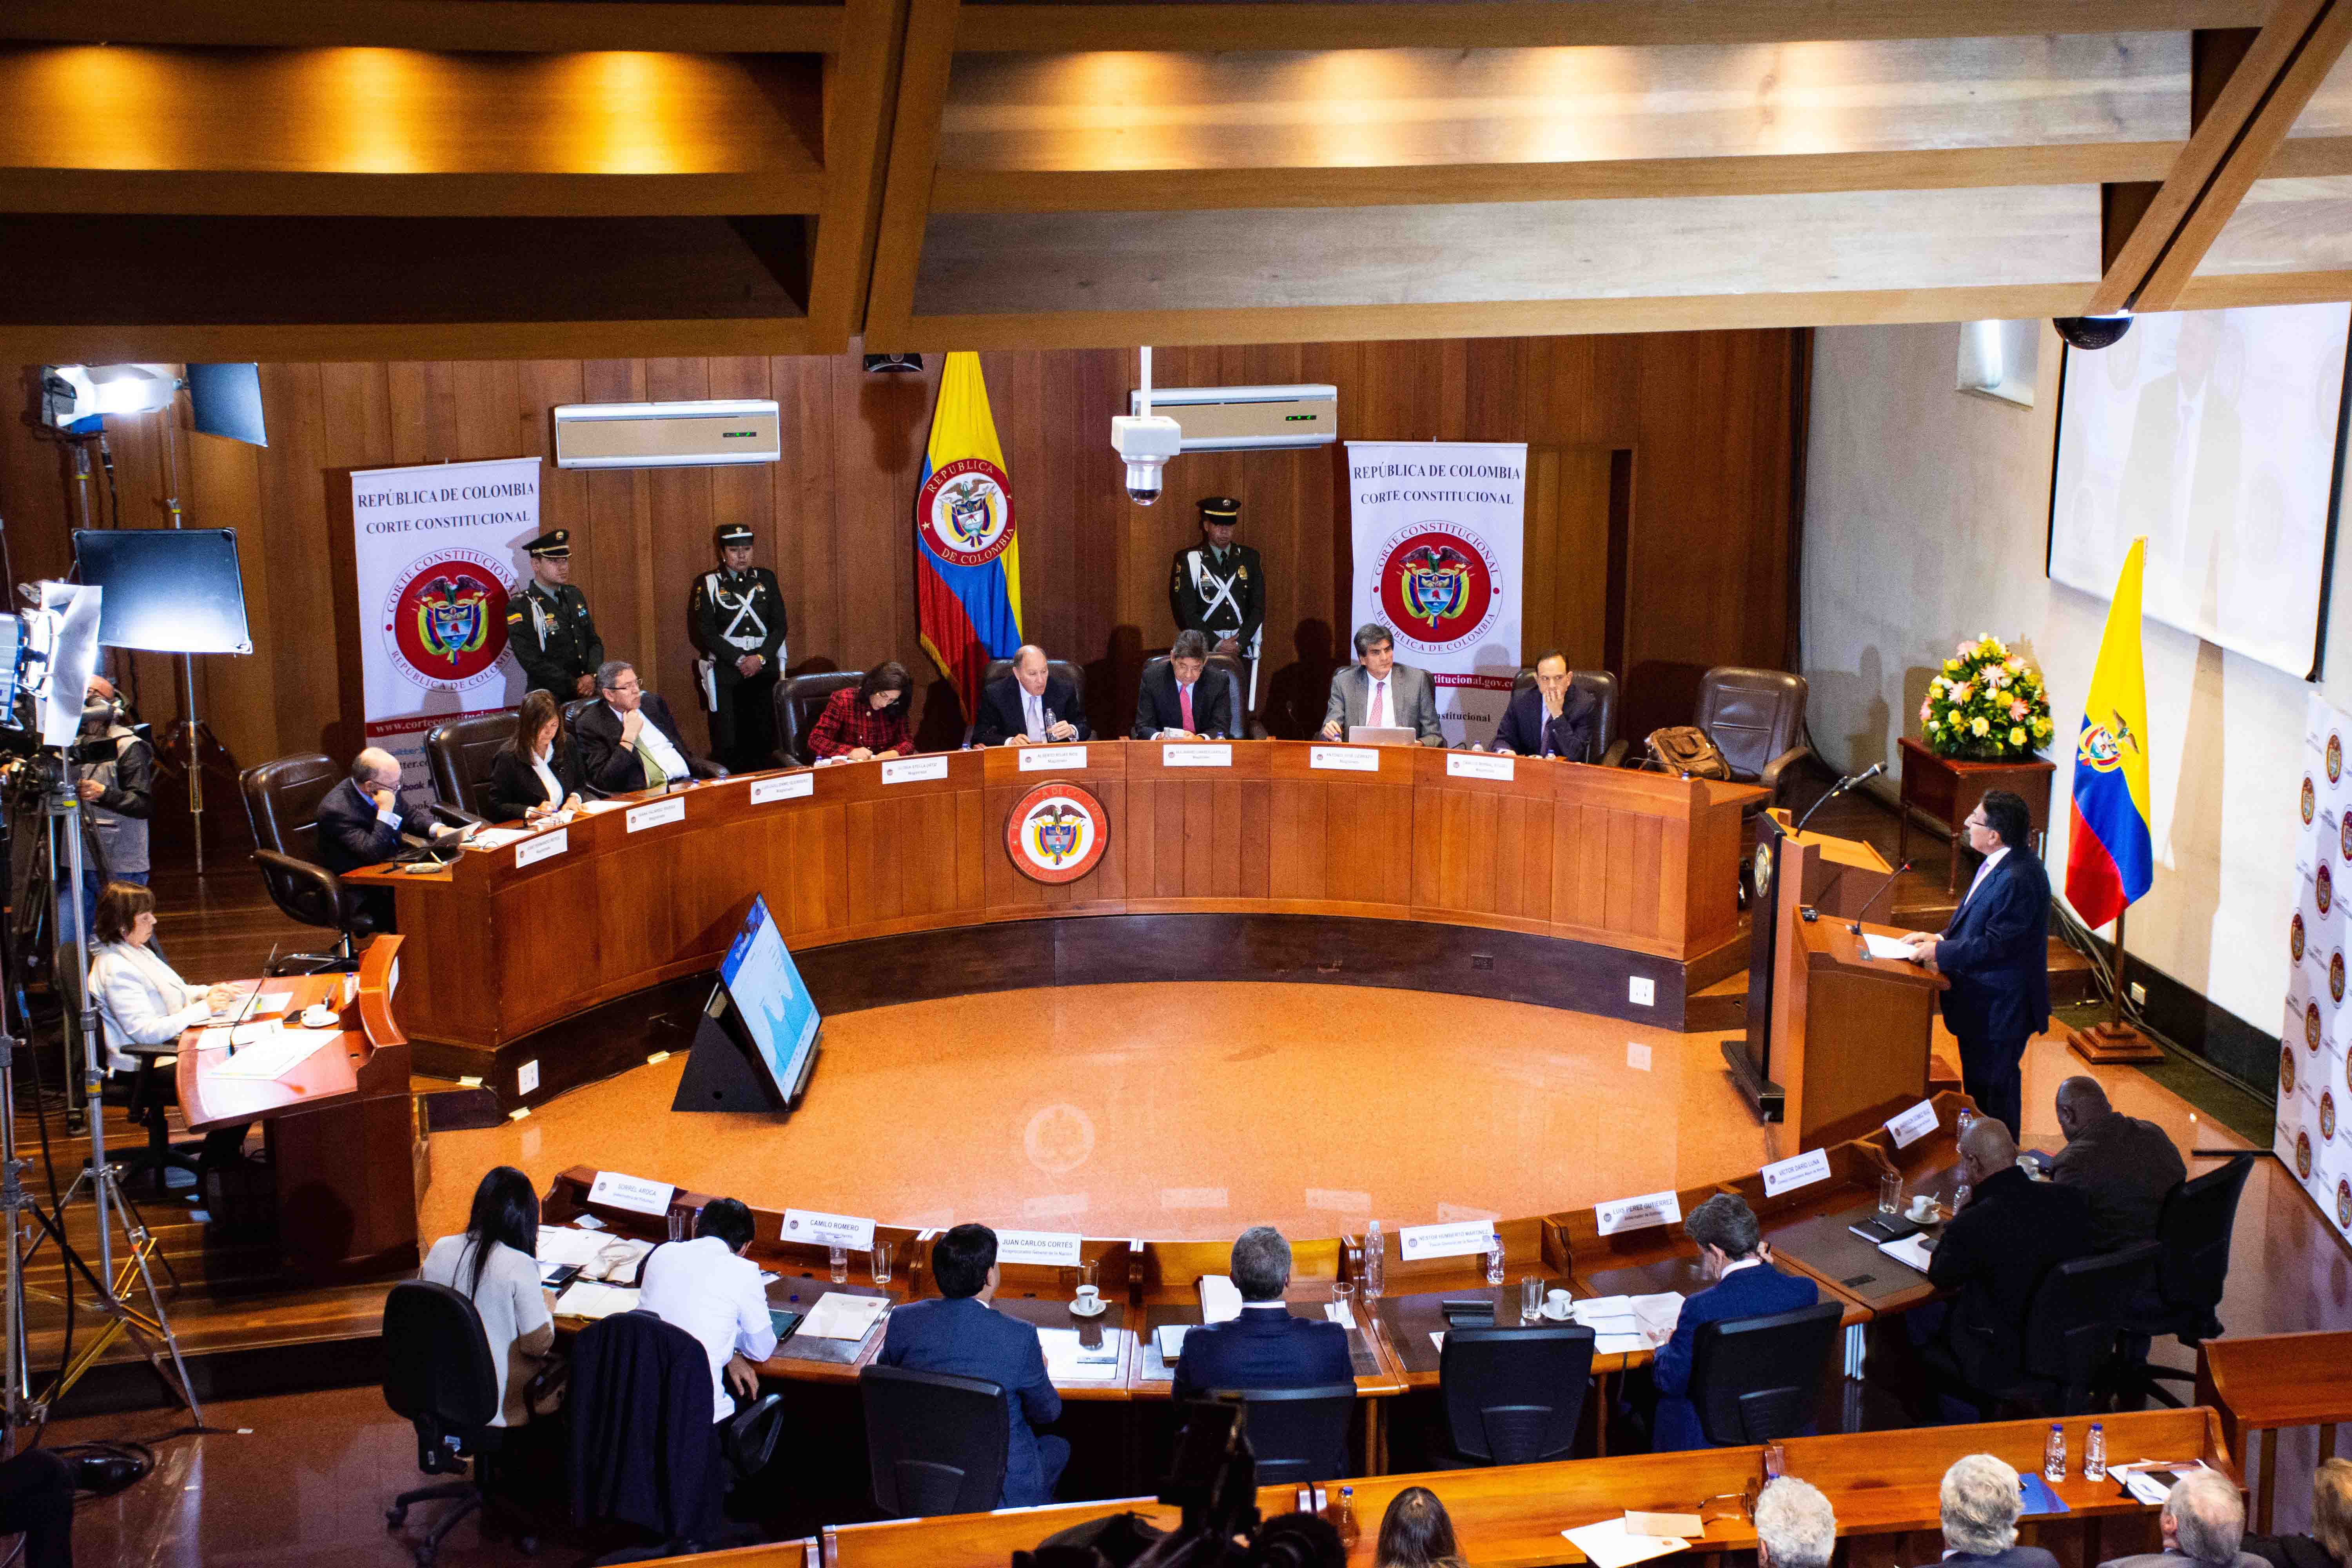 Una audiencia pública en la Corte Constitucional de Colombia en Bogotá el 7 de marzo de 2019. © Juan David Moreno Gallego/Anadolu Agency/Getty Images